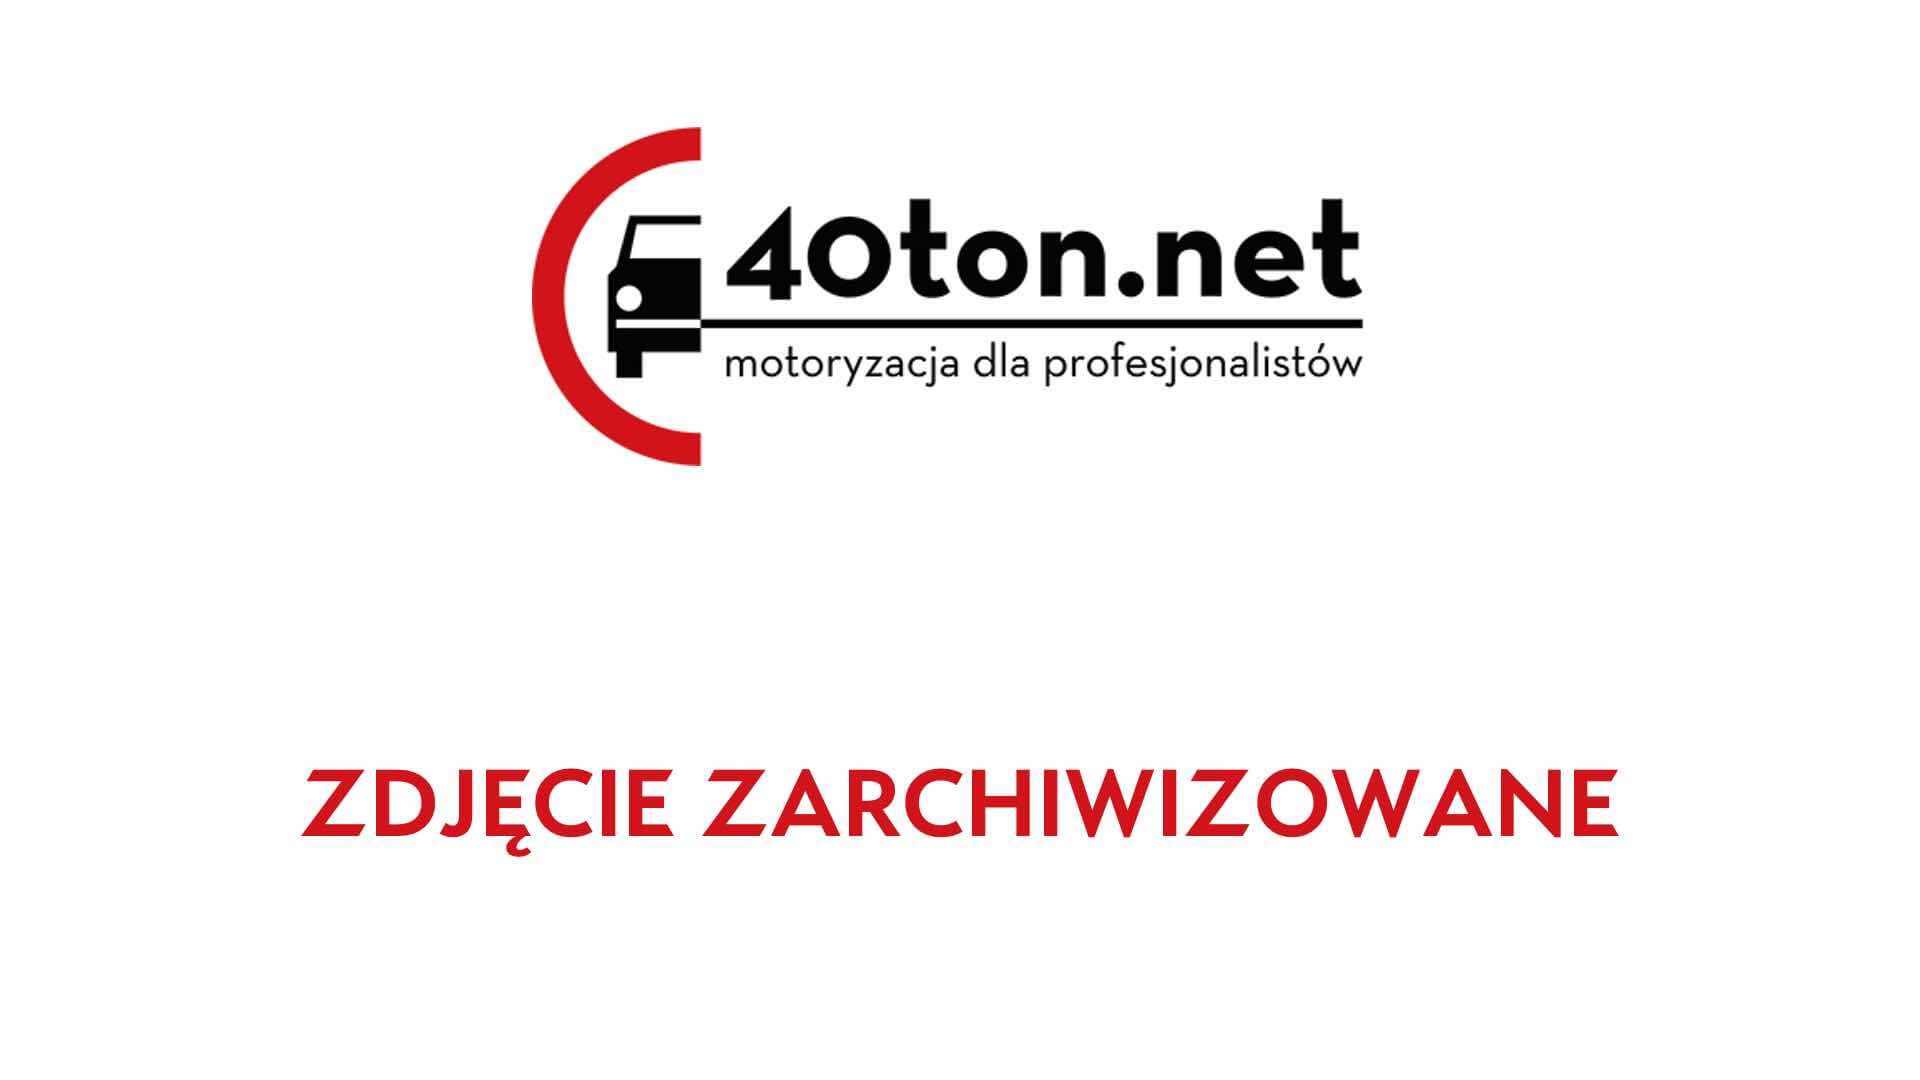 polskie_ciezarowki_40ton_truckspotters_1302